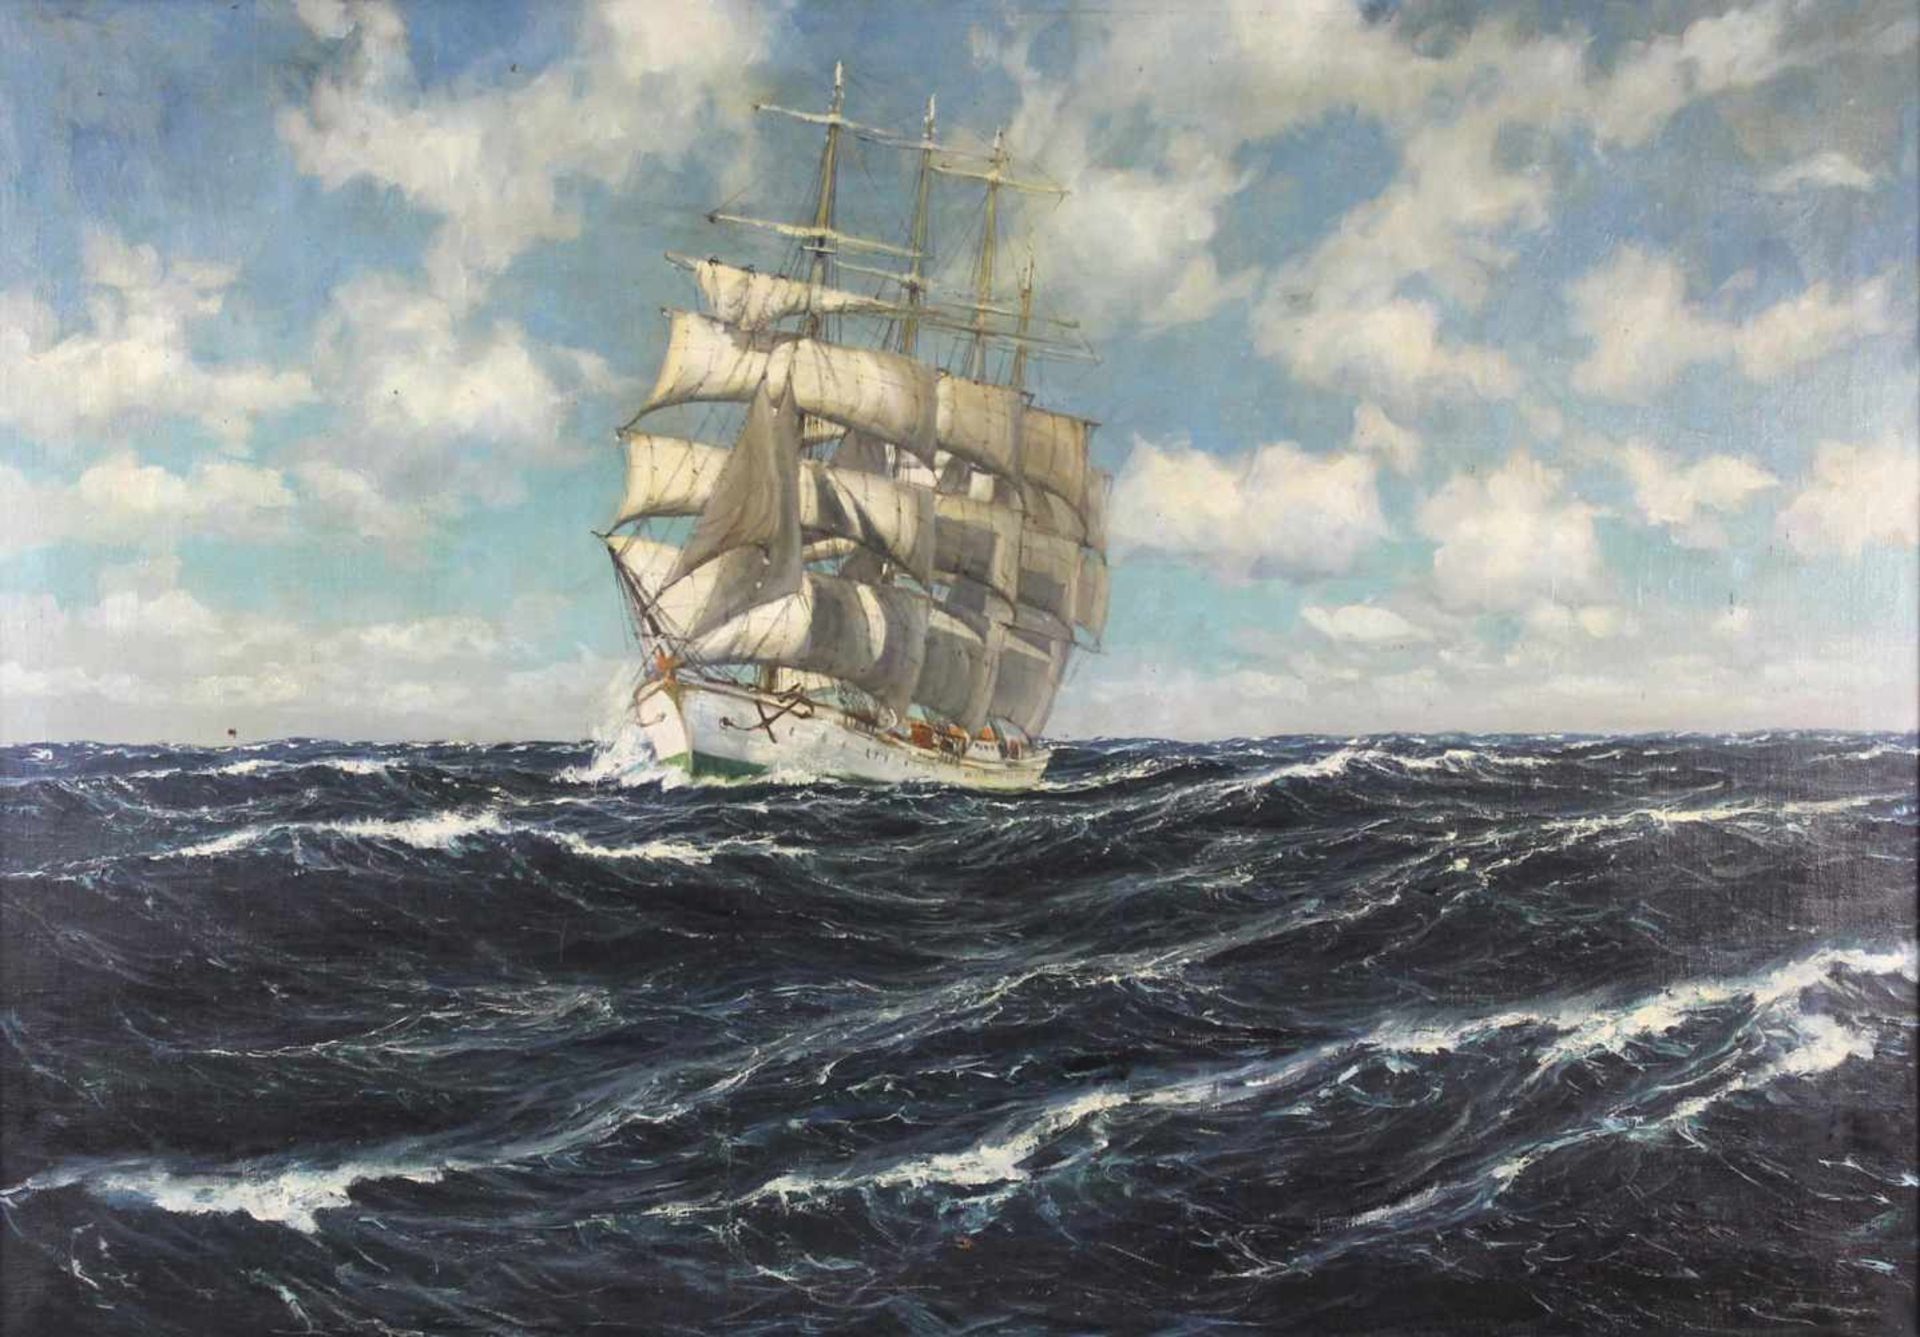 Patrick VON KALCKREUTH (1892 - 1970). Viermaster in Meeresbrandung.70 cm x 100 cm. Gemälde. Öl auf